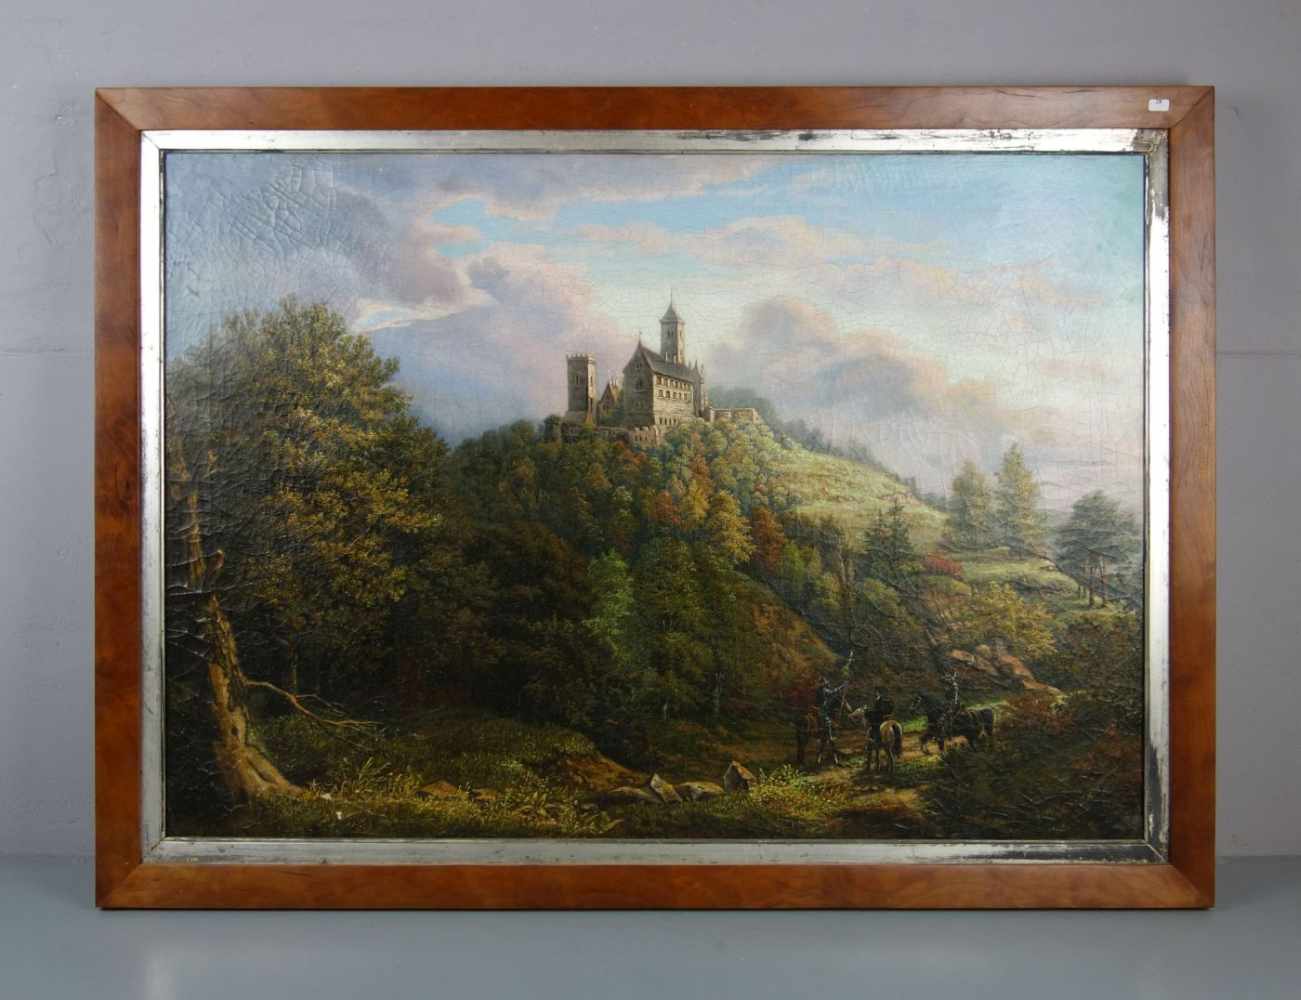 MALER DER ROMANTIK (19. Jh.), Gemälde / painting: "Landschaft mit Blick auf die Wartburg", Öl auf